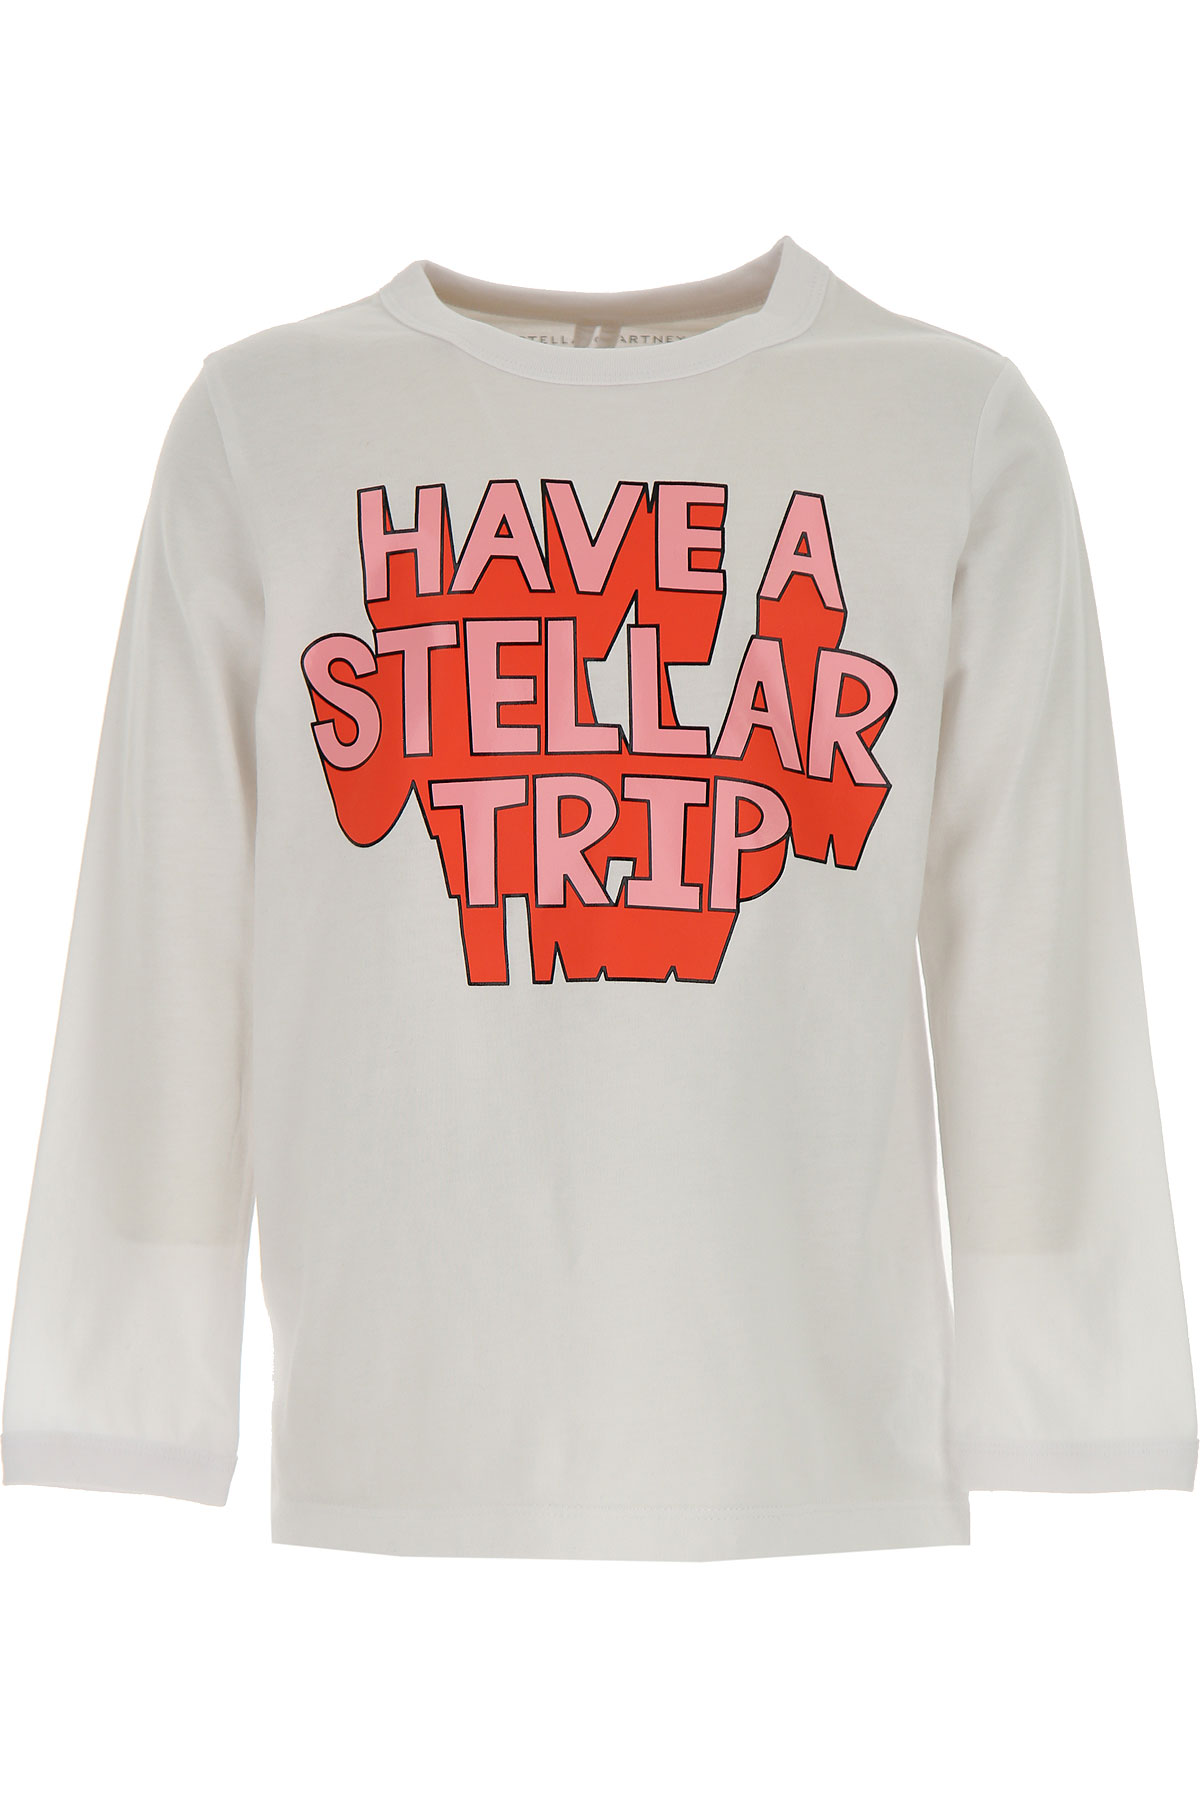 Stella McCartney Kinder T-Shirt für Mädchen Günstig im Sale, Weiss, Baumwolle, 2017, 12Y 4Y 6Y 8Y